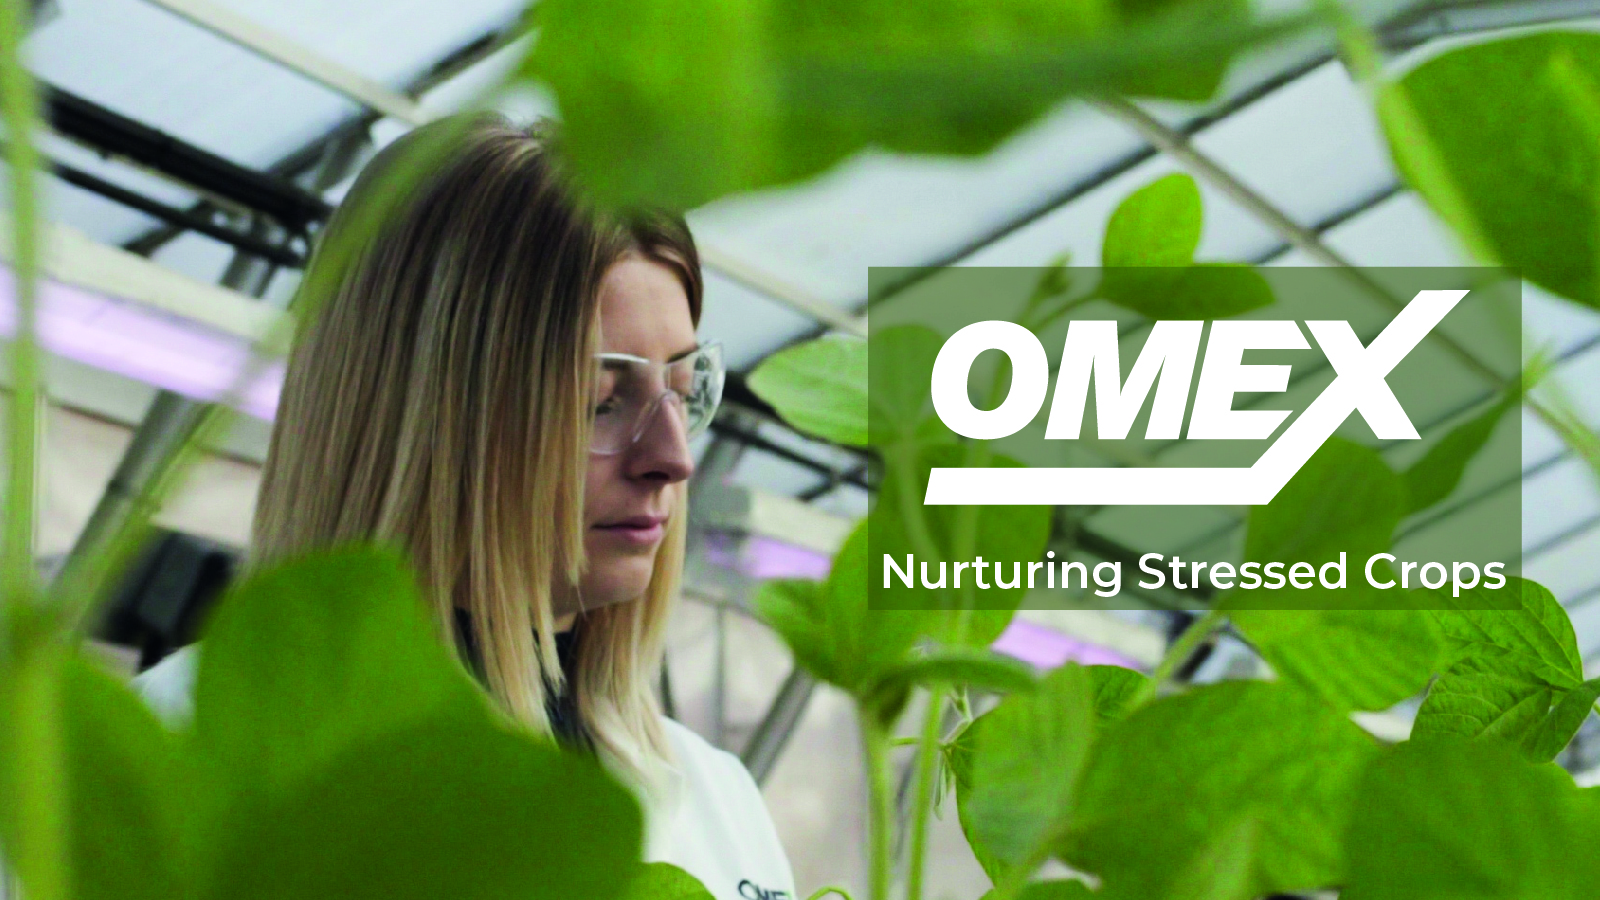 Nurturing stressed crops – Horticulture